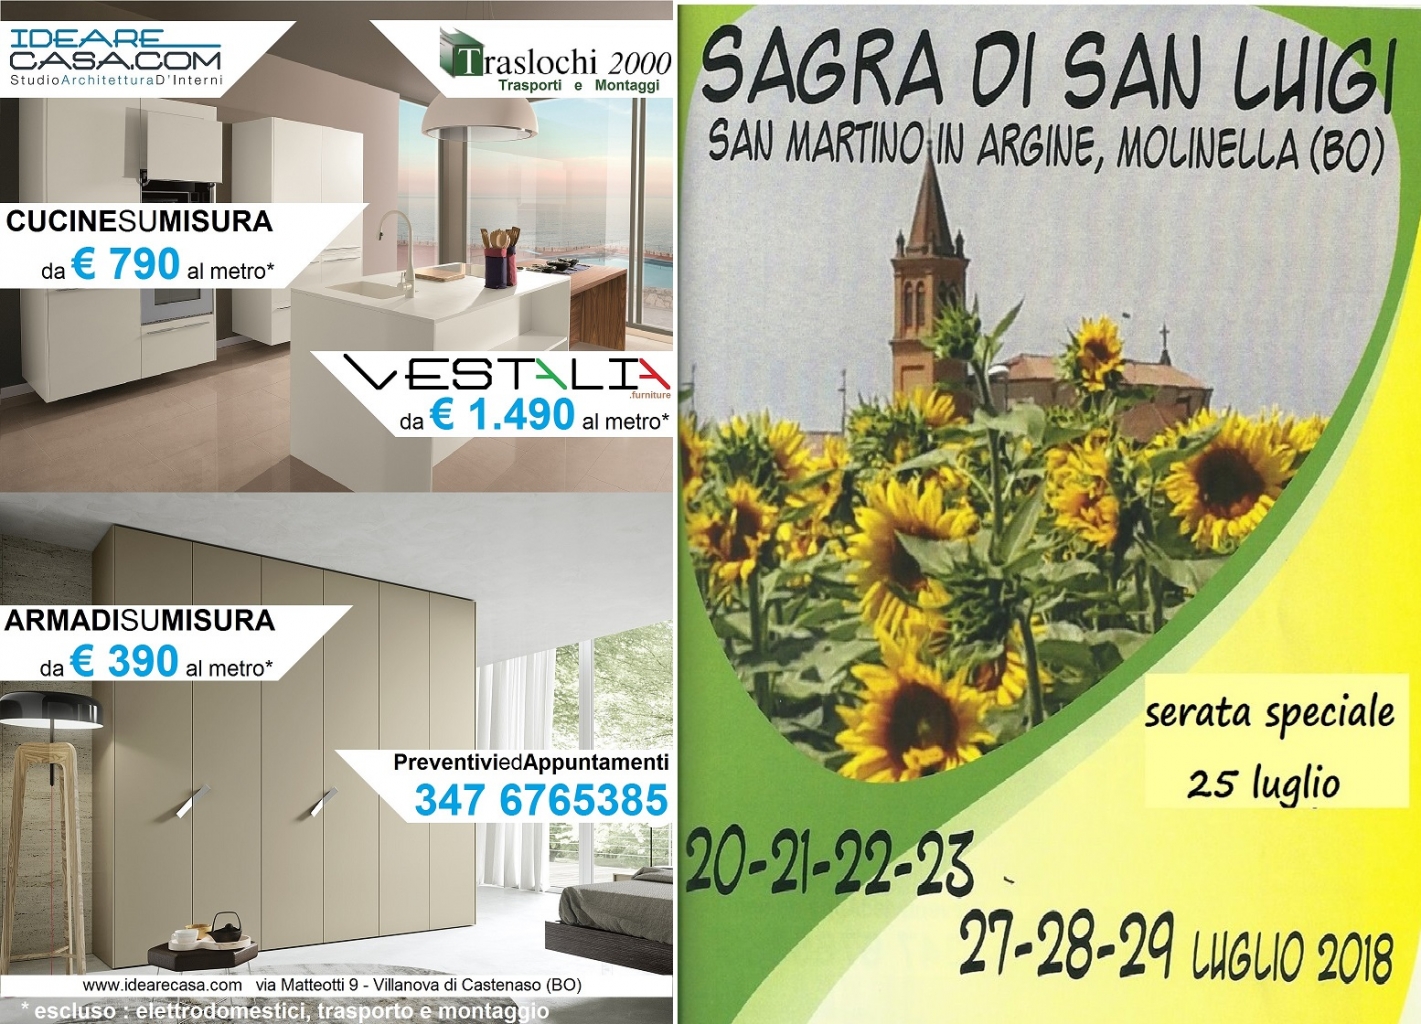 IdeareCasa e VESTALIA sponsor della Sagra di San Luigi 2018 